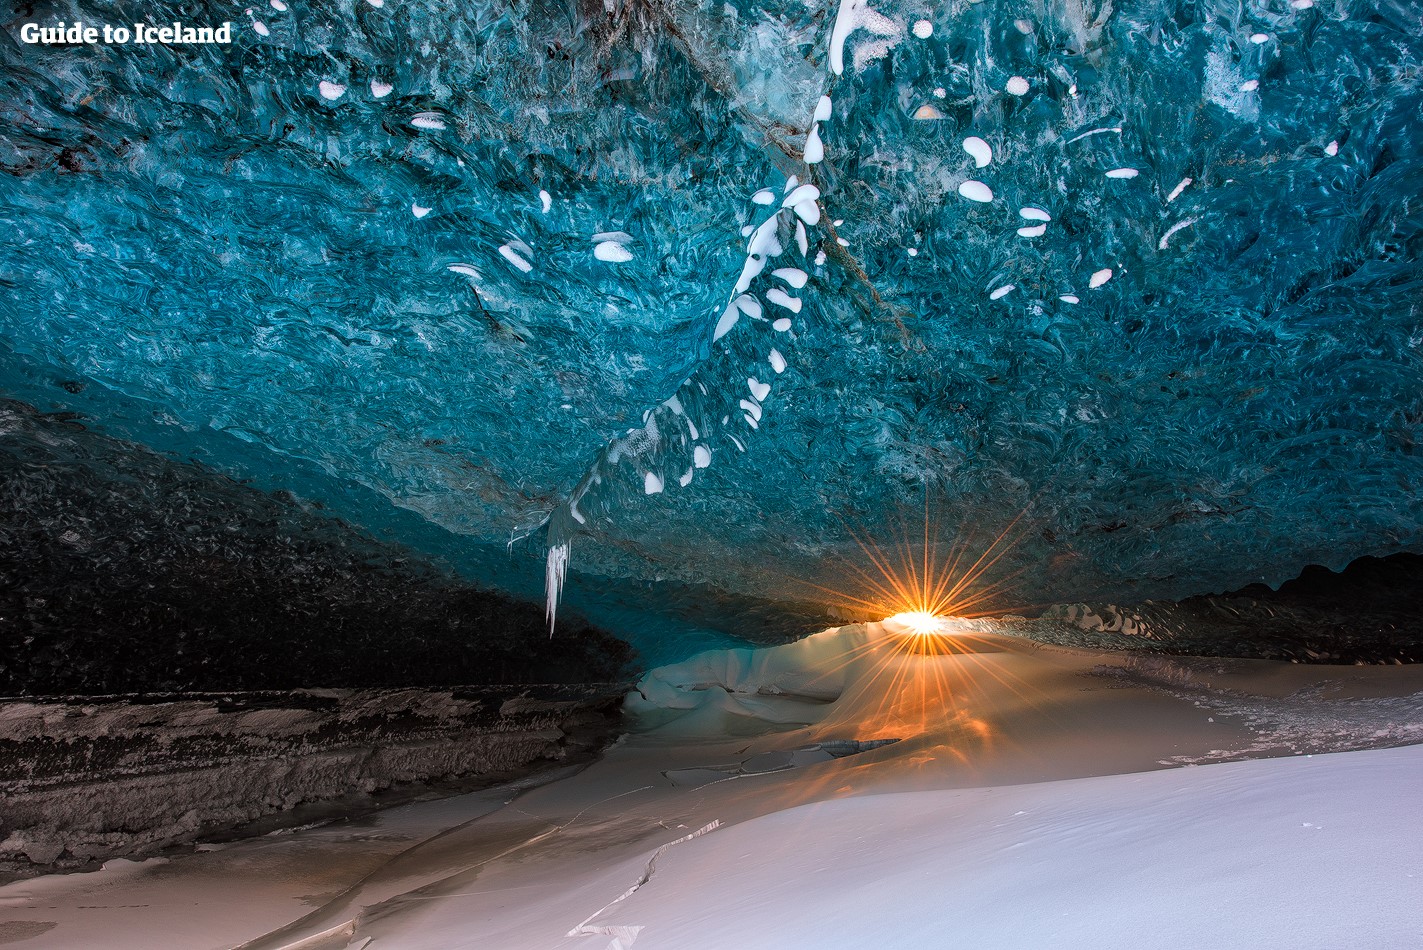 Eishöhlen gibt es in allen Größen und Formen. Um sich in ihnen fortzubewegen, musst du manchmal kriechen, klettern und rutschen.